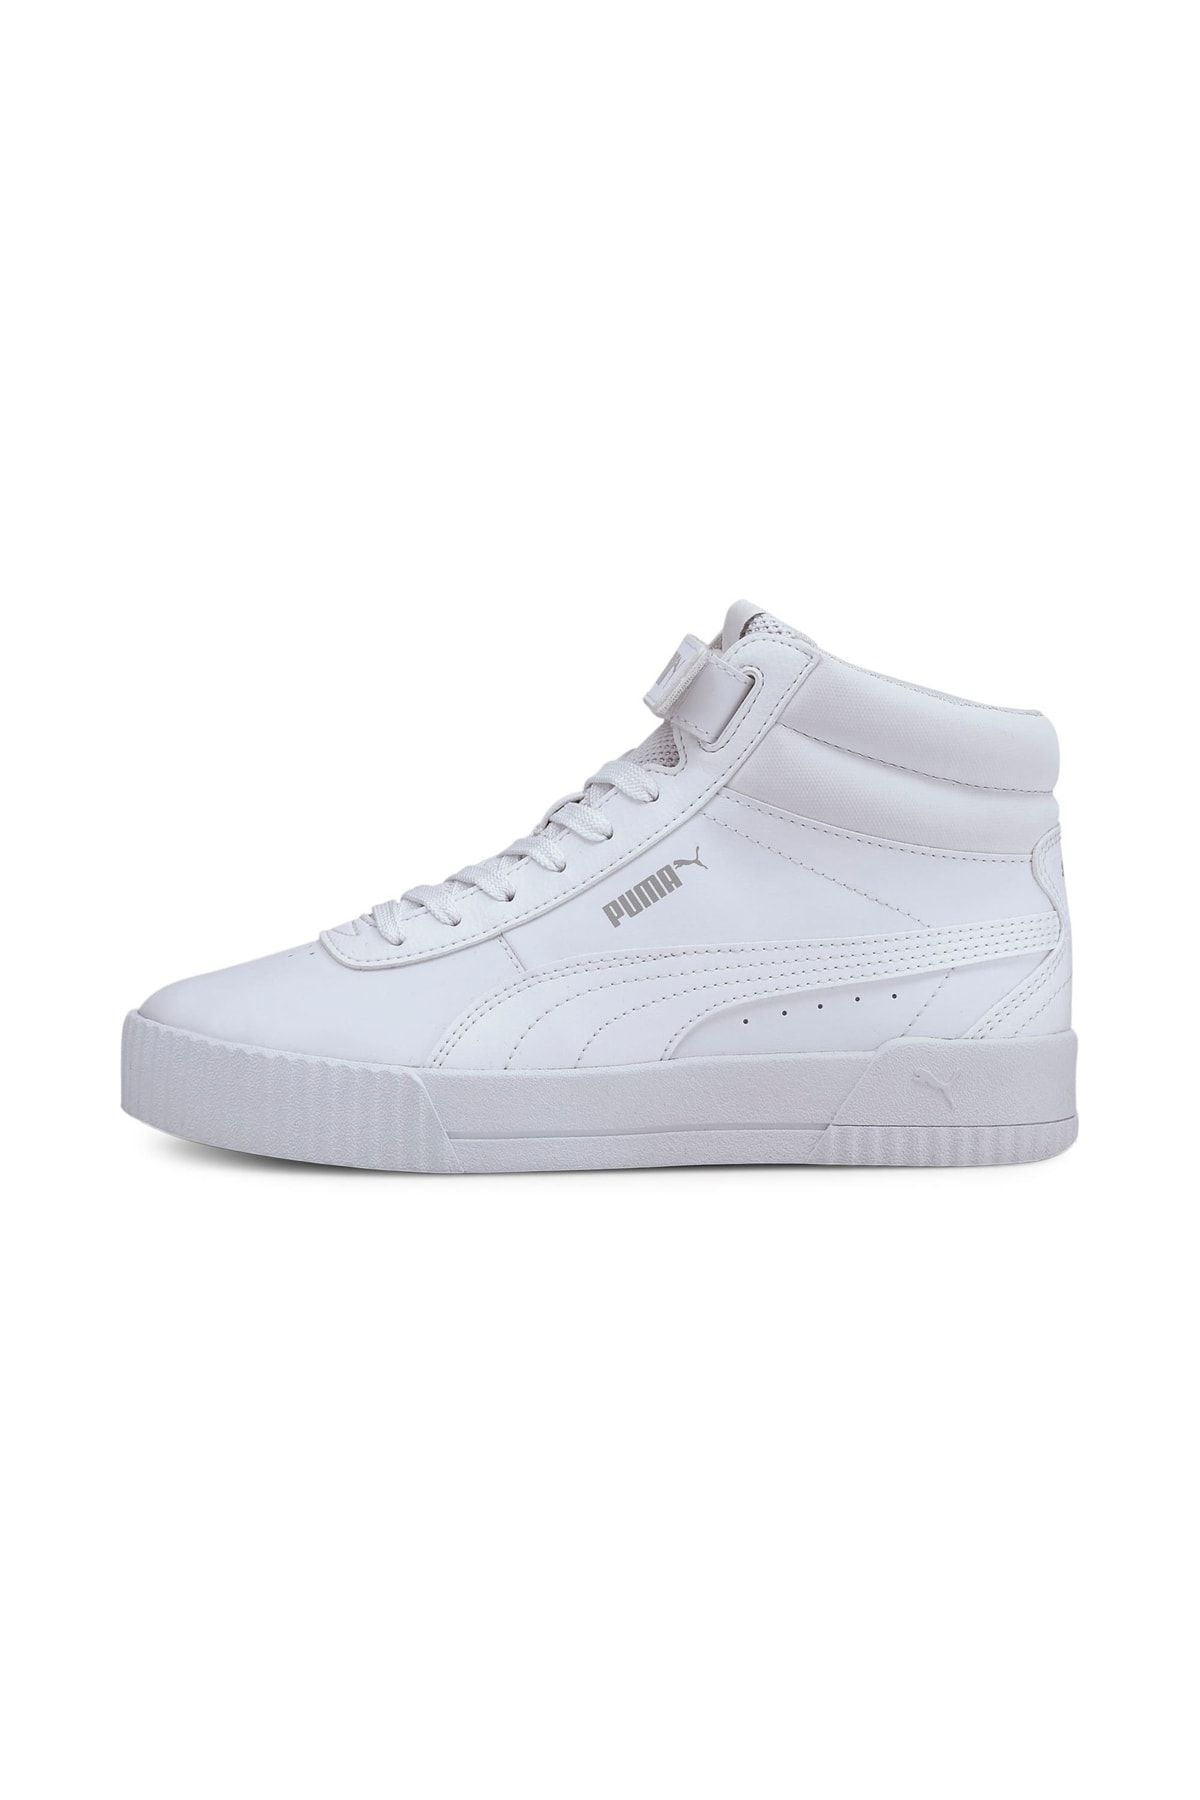 Puma CARINA MID Beyaz Kadın Sneaker Ayakkabı 101119316